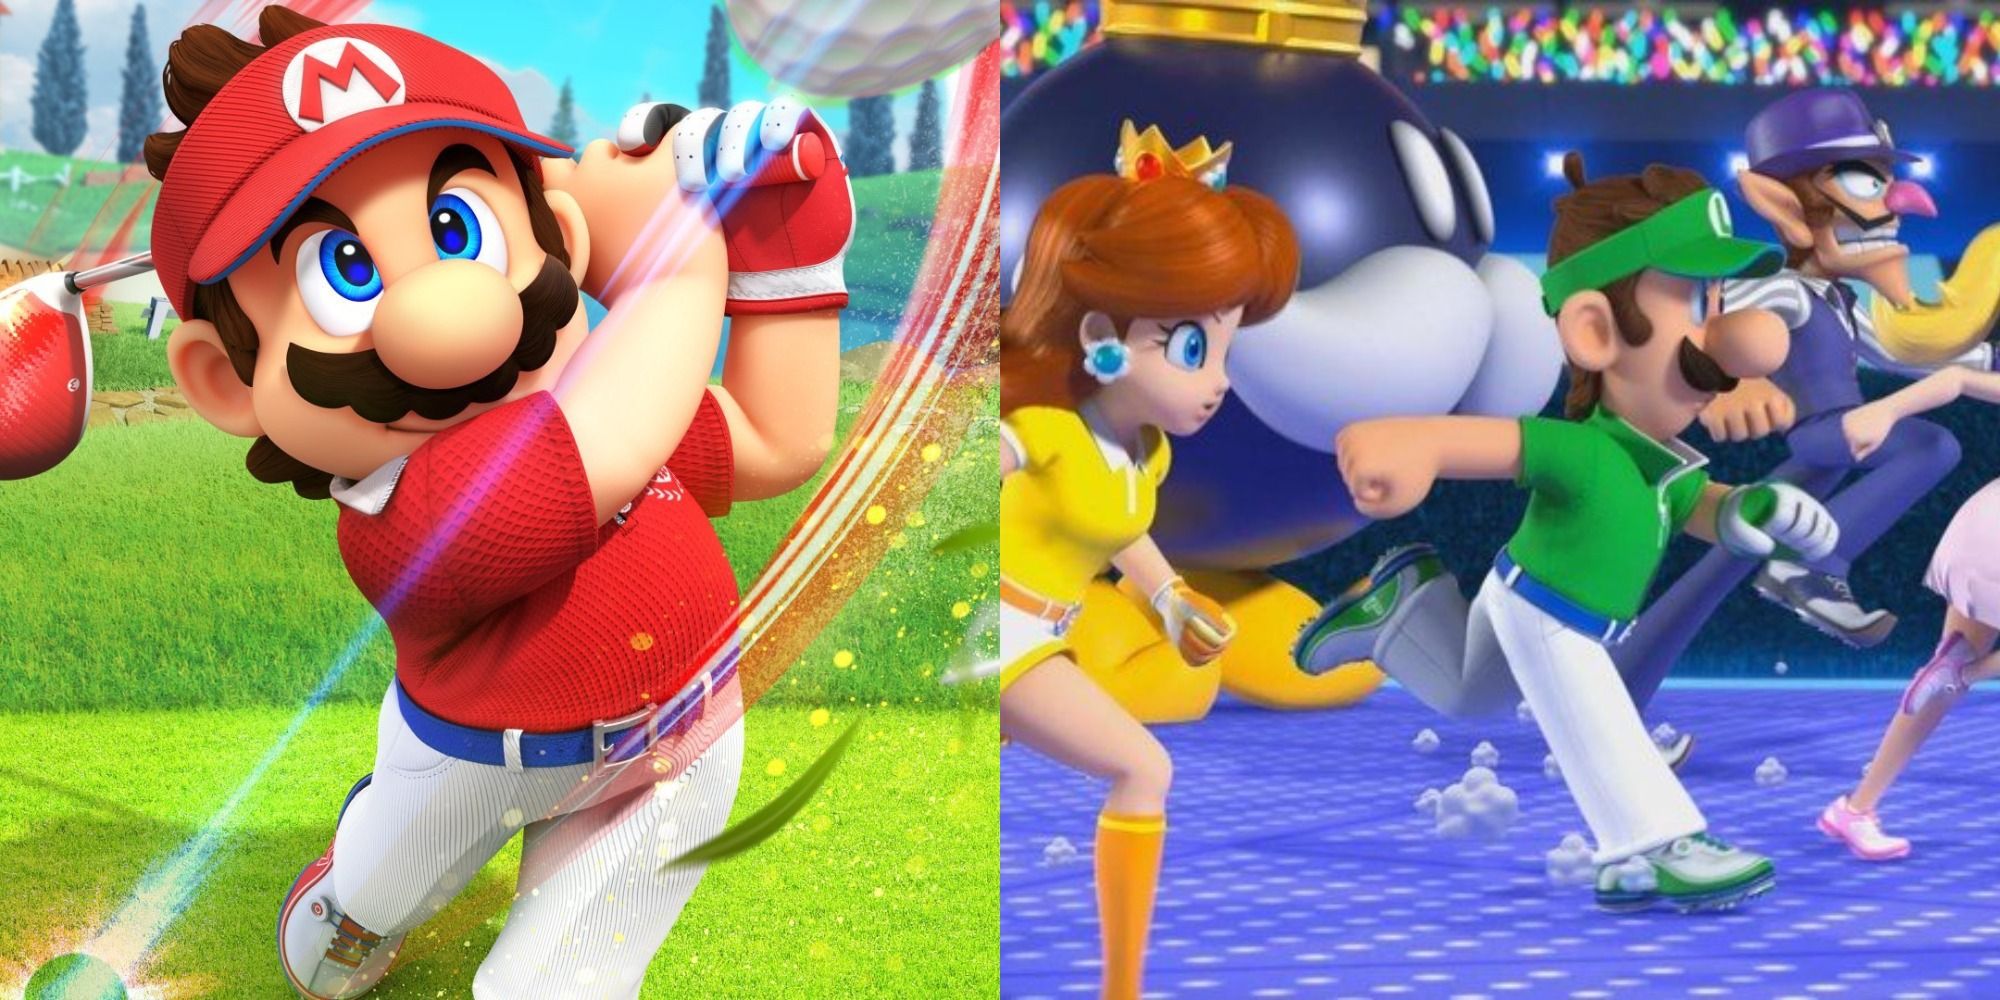 Mario-Golf-Super-Rush-Mario-Swinging-Daisy-Luigi-Waluigi-Bob-omb-Running